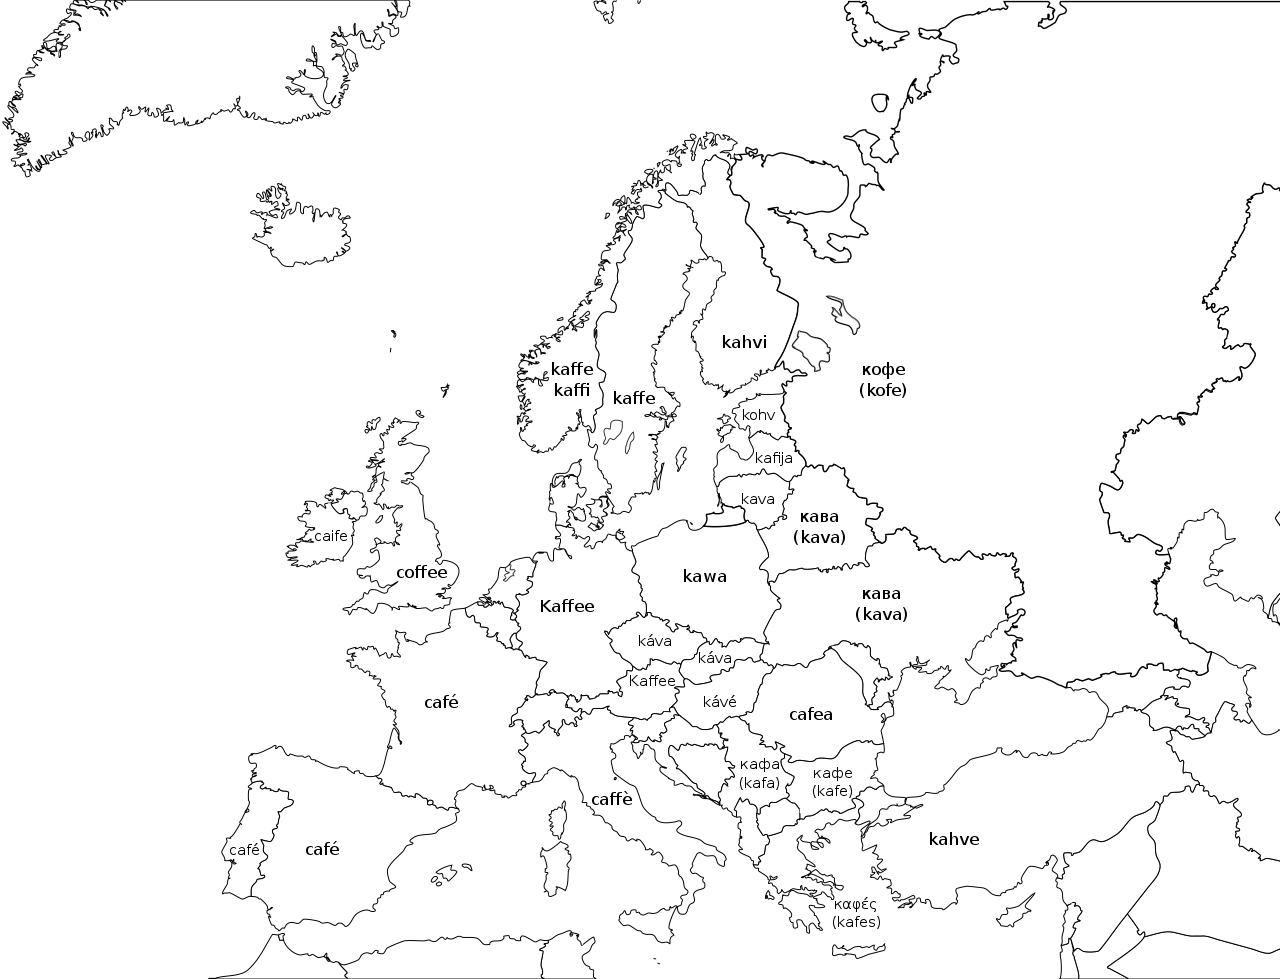 Evoluzione del nome “caffè” nel continente europeo.